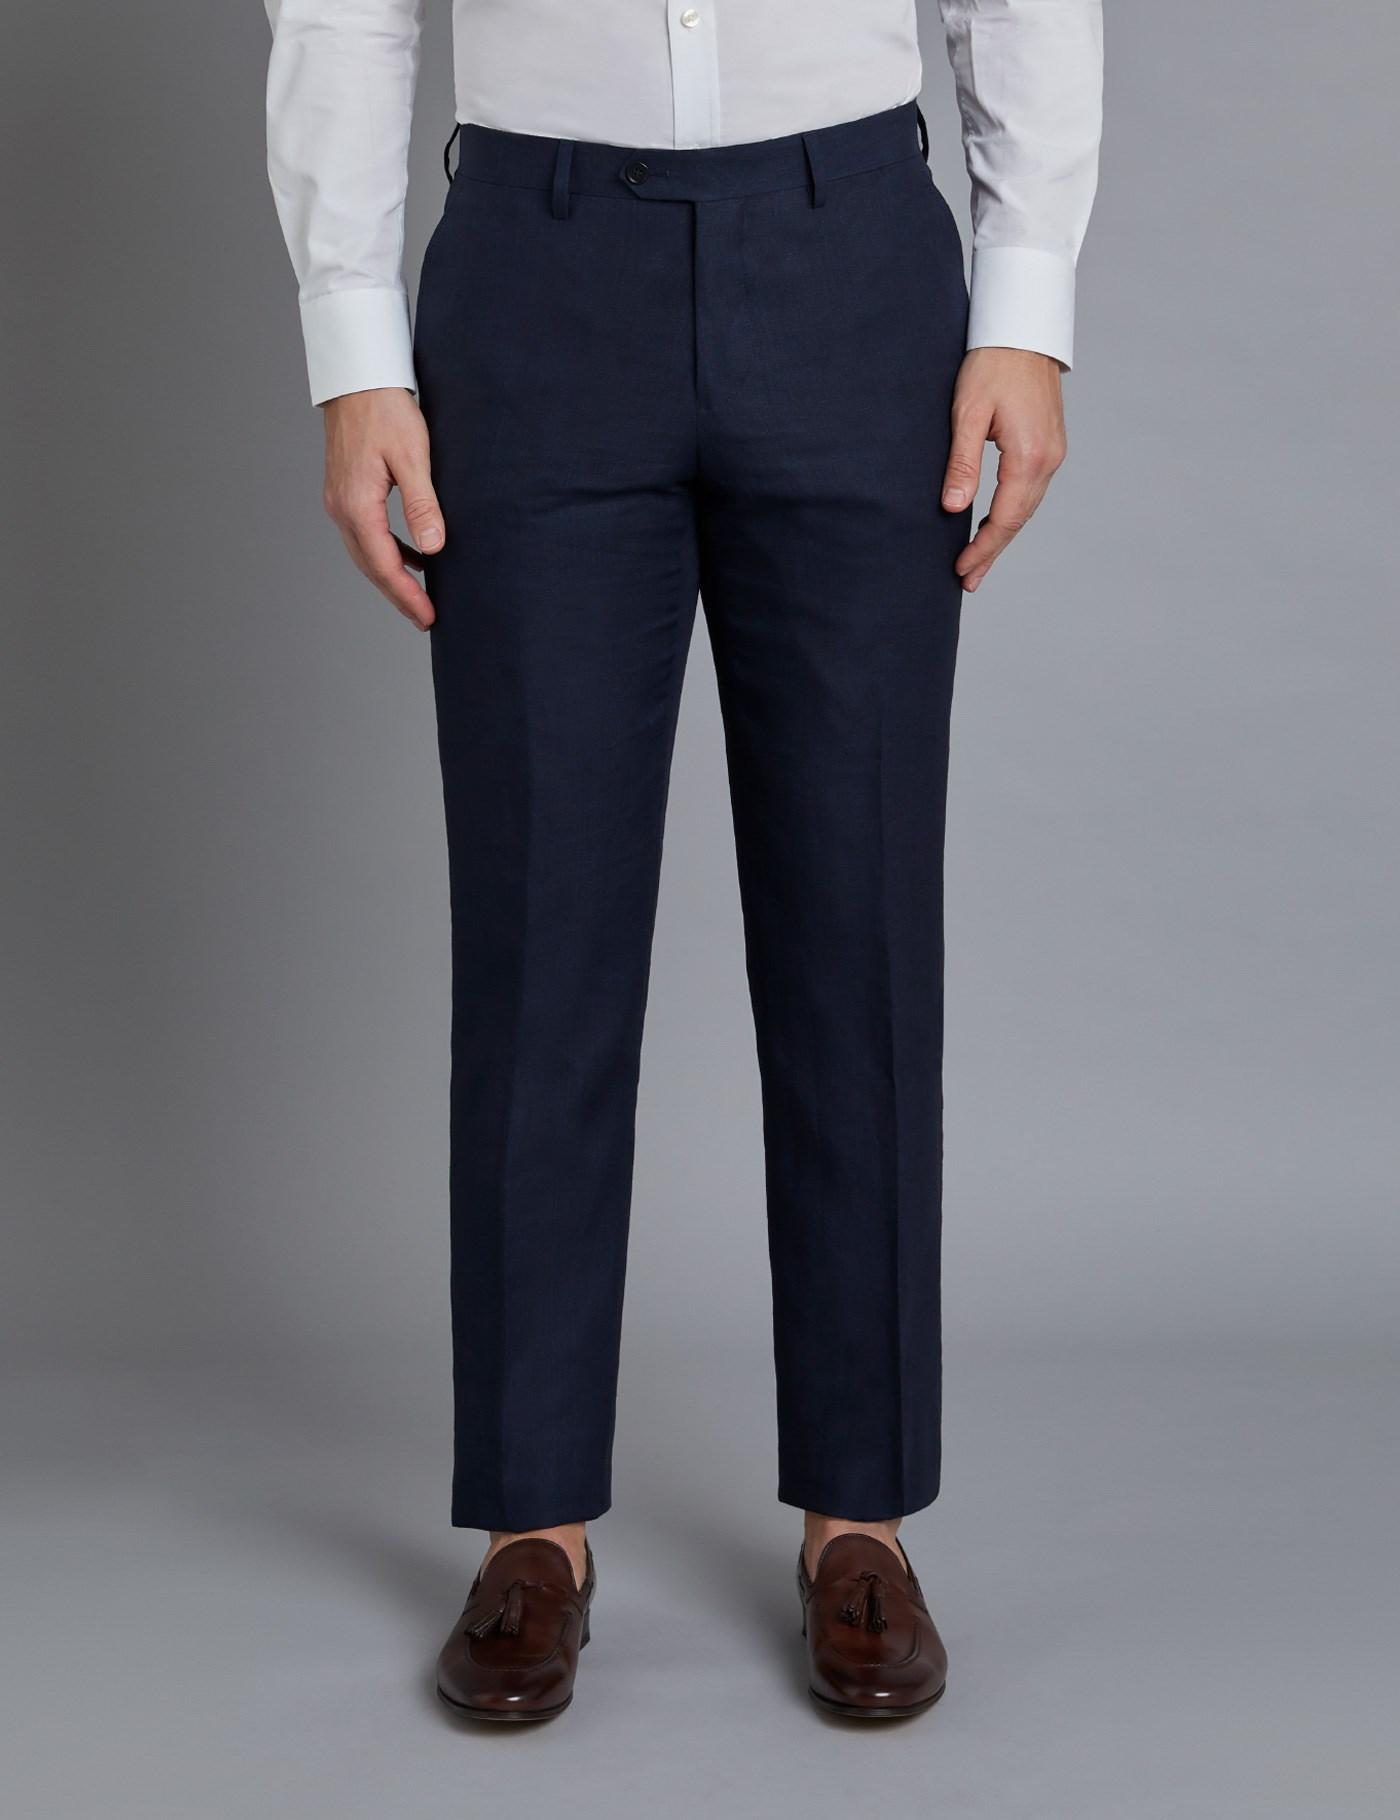 Hawes & Curtis Navy Linen Slim Fit Suit Pants 40